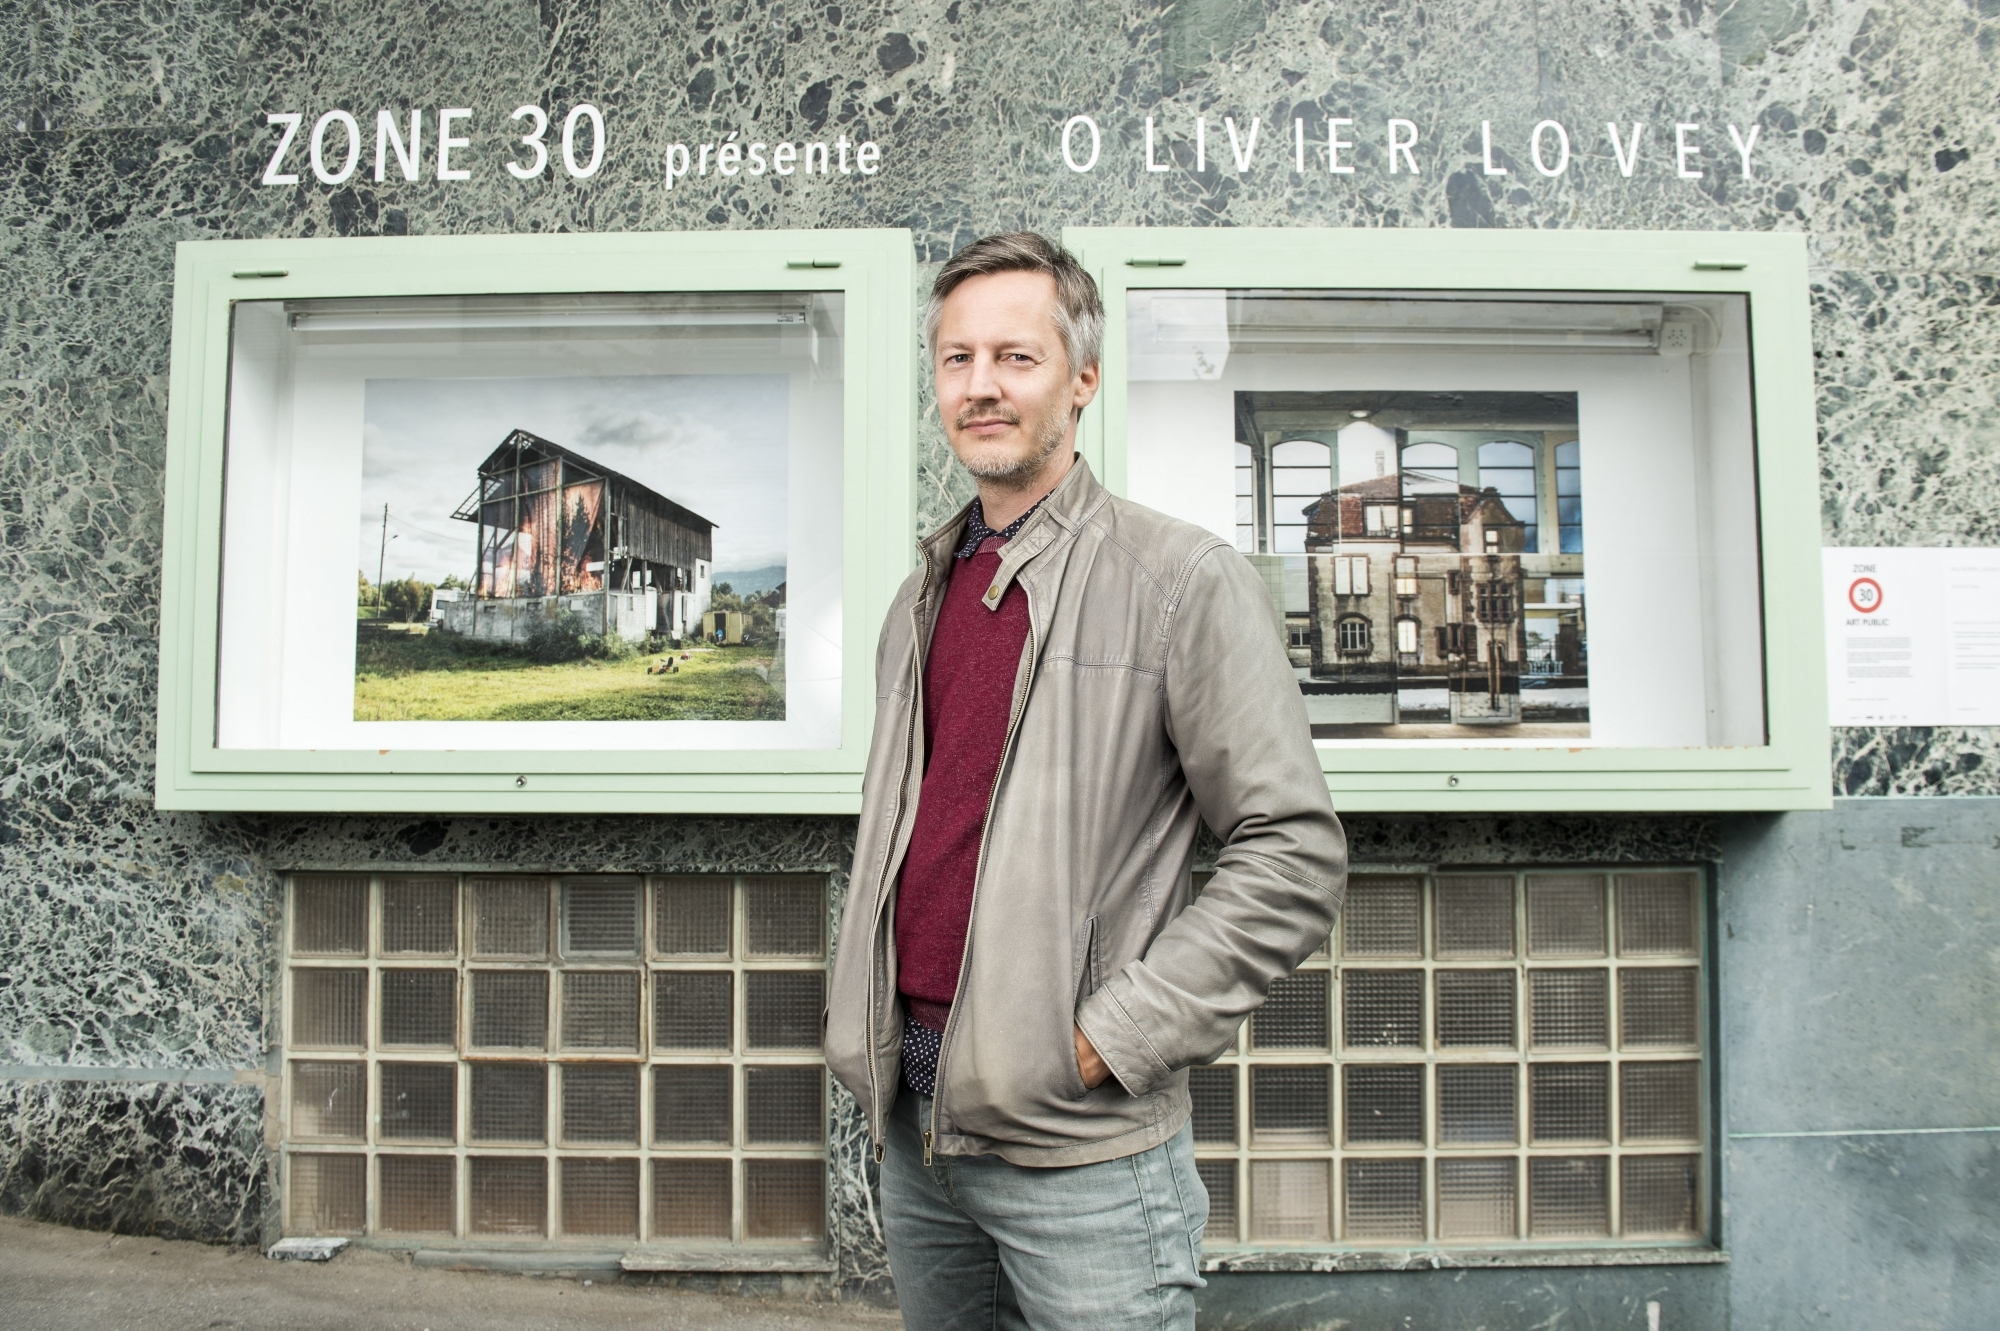 Olivier Lovey devant deux des images exposées à Zone 30 Art public. Elles sont issues de la série «Miroirs aux alouettes», qui a valu au photographe le prestigieux Swiss Photo Award en 2018.